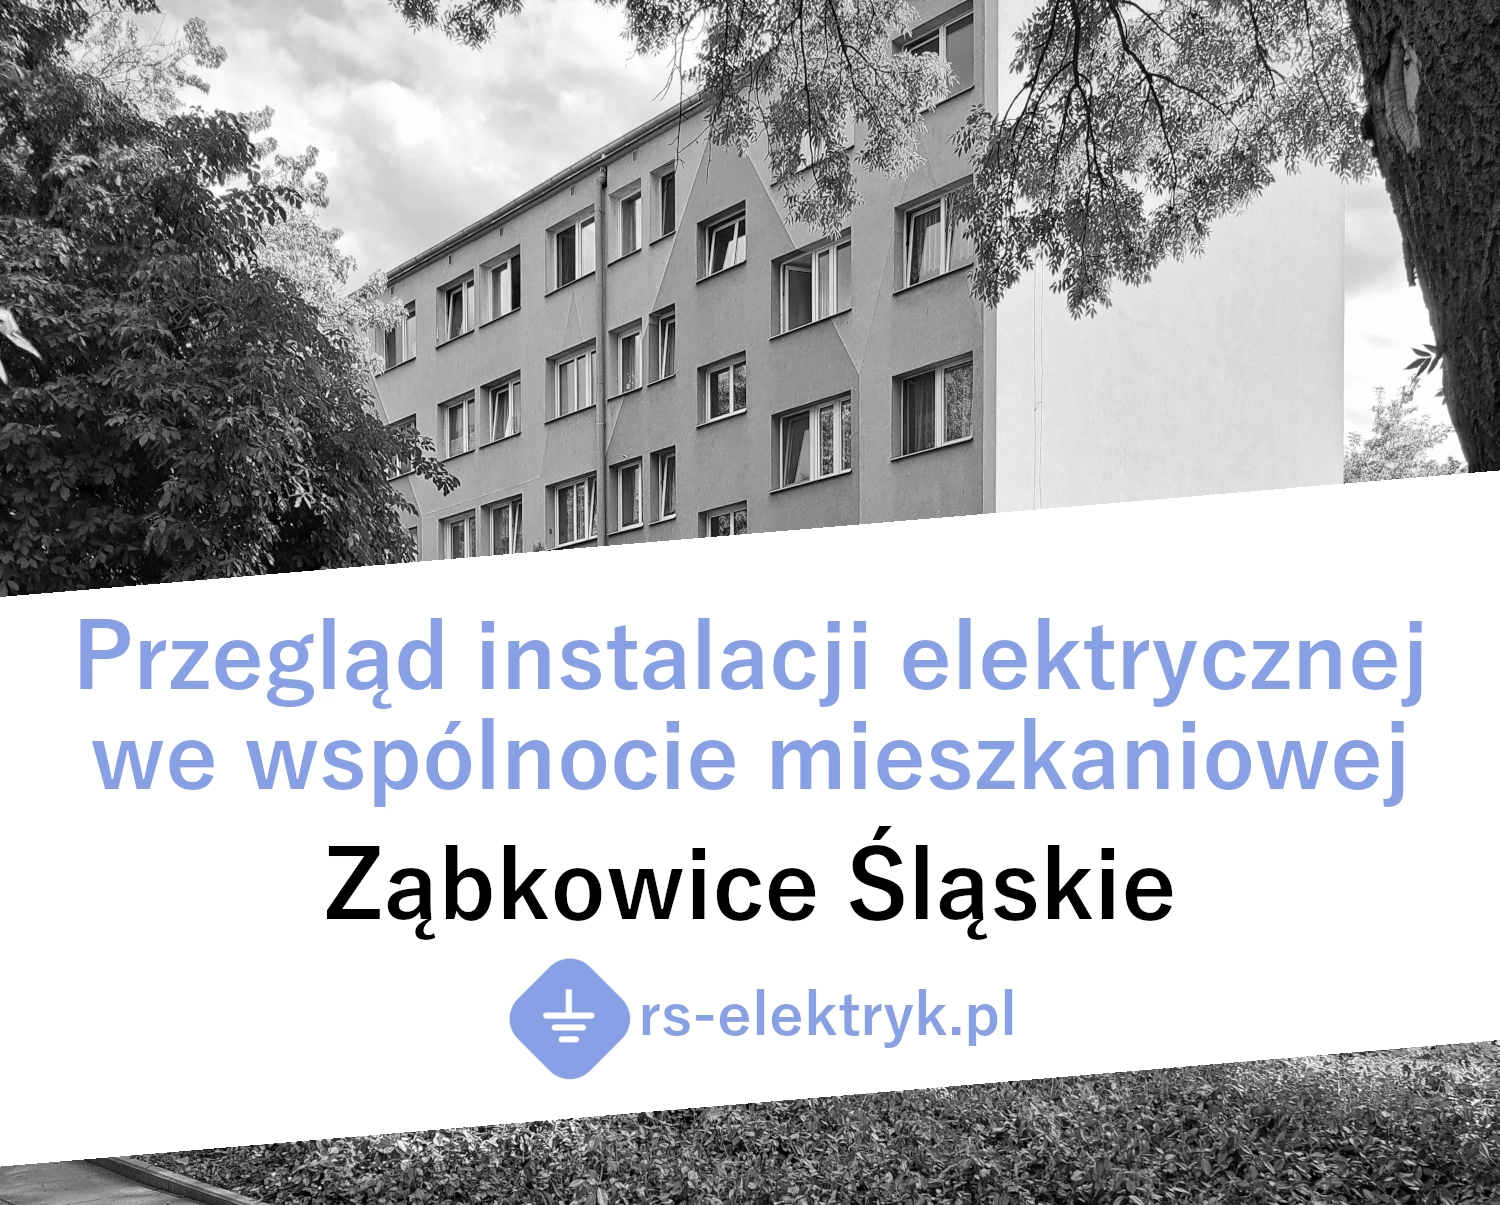 Przegląd instalacji elektrycznej we wspólnocie mieszkaniowej (Ząbkowice Śląskie)